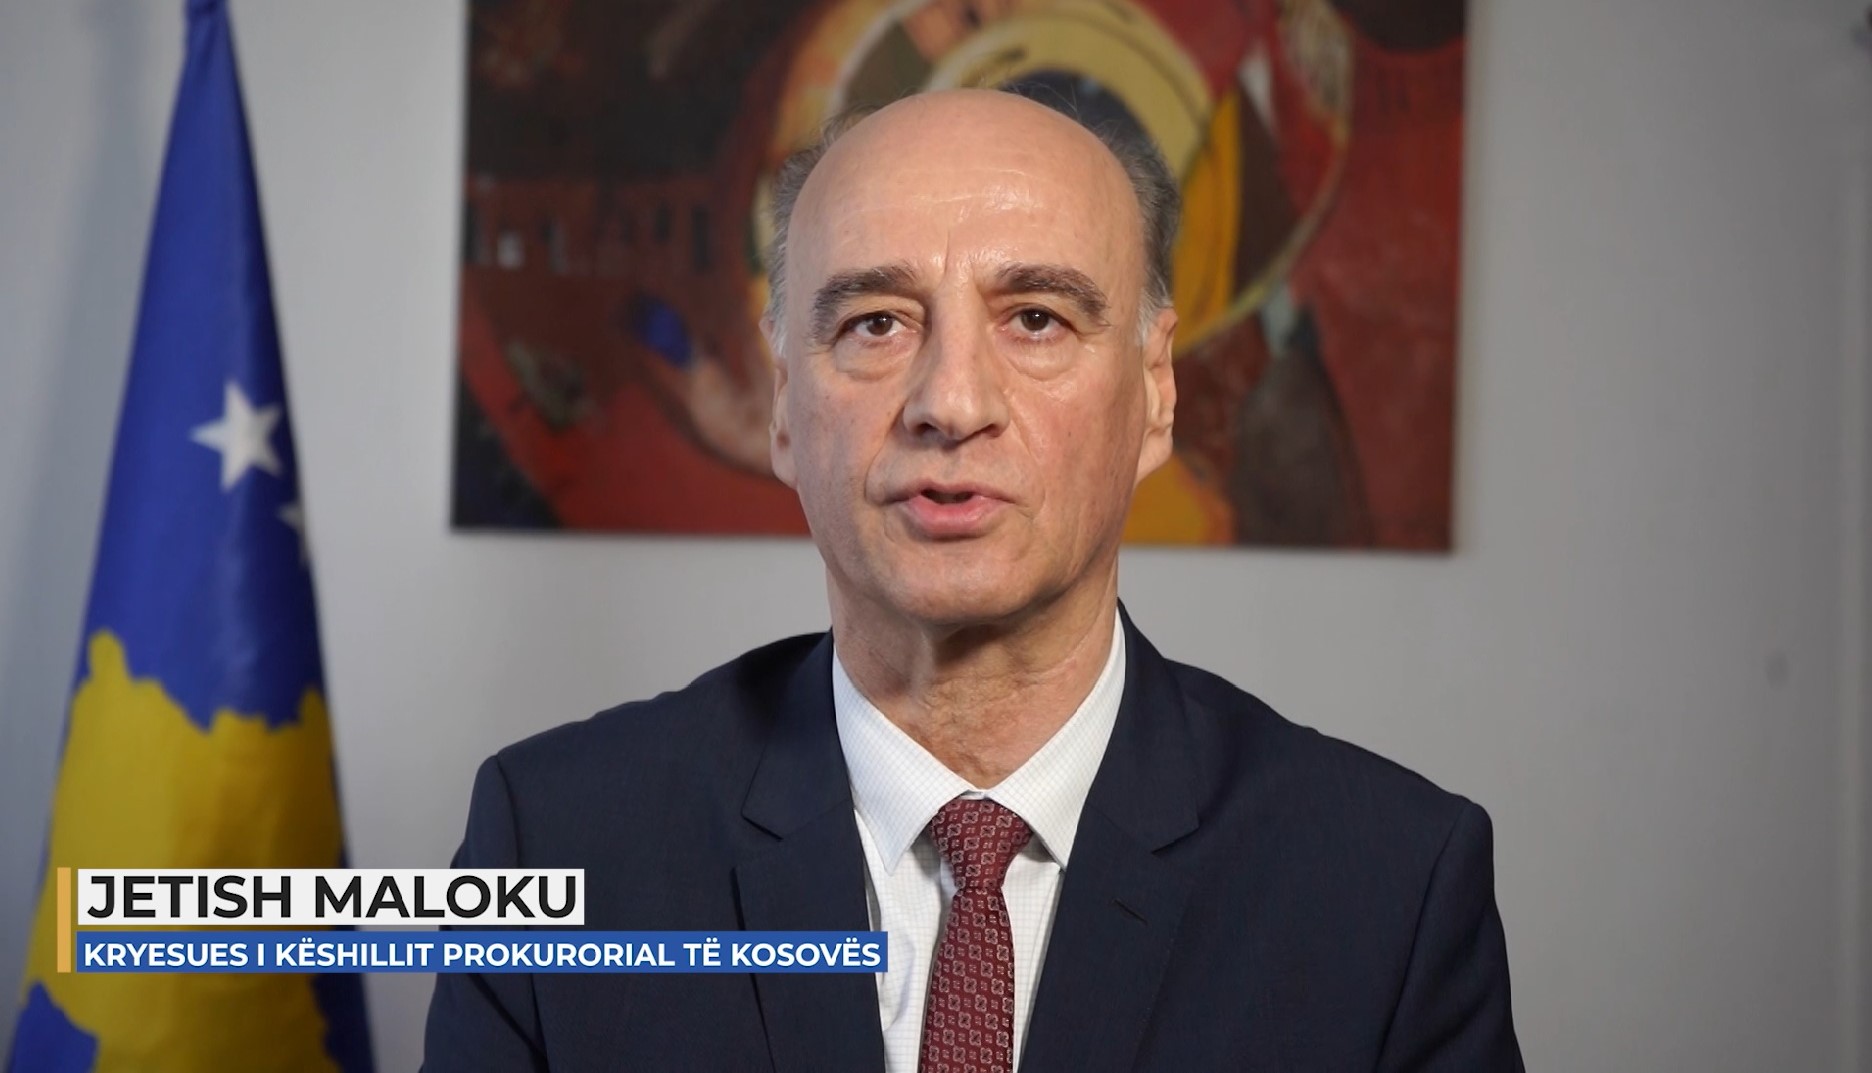 Fjalimi i Kryesuesit të Këshillit Prokurorial të Kosovës, Jetish Maloku, me rastin e mbajtjes së Konferencës Vjetore të Prokurorëve (VIDEO)